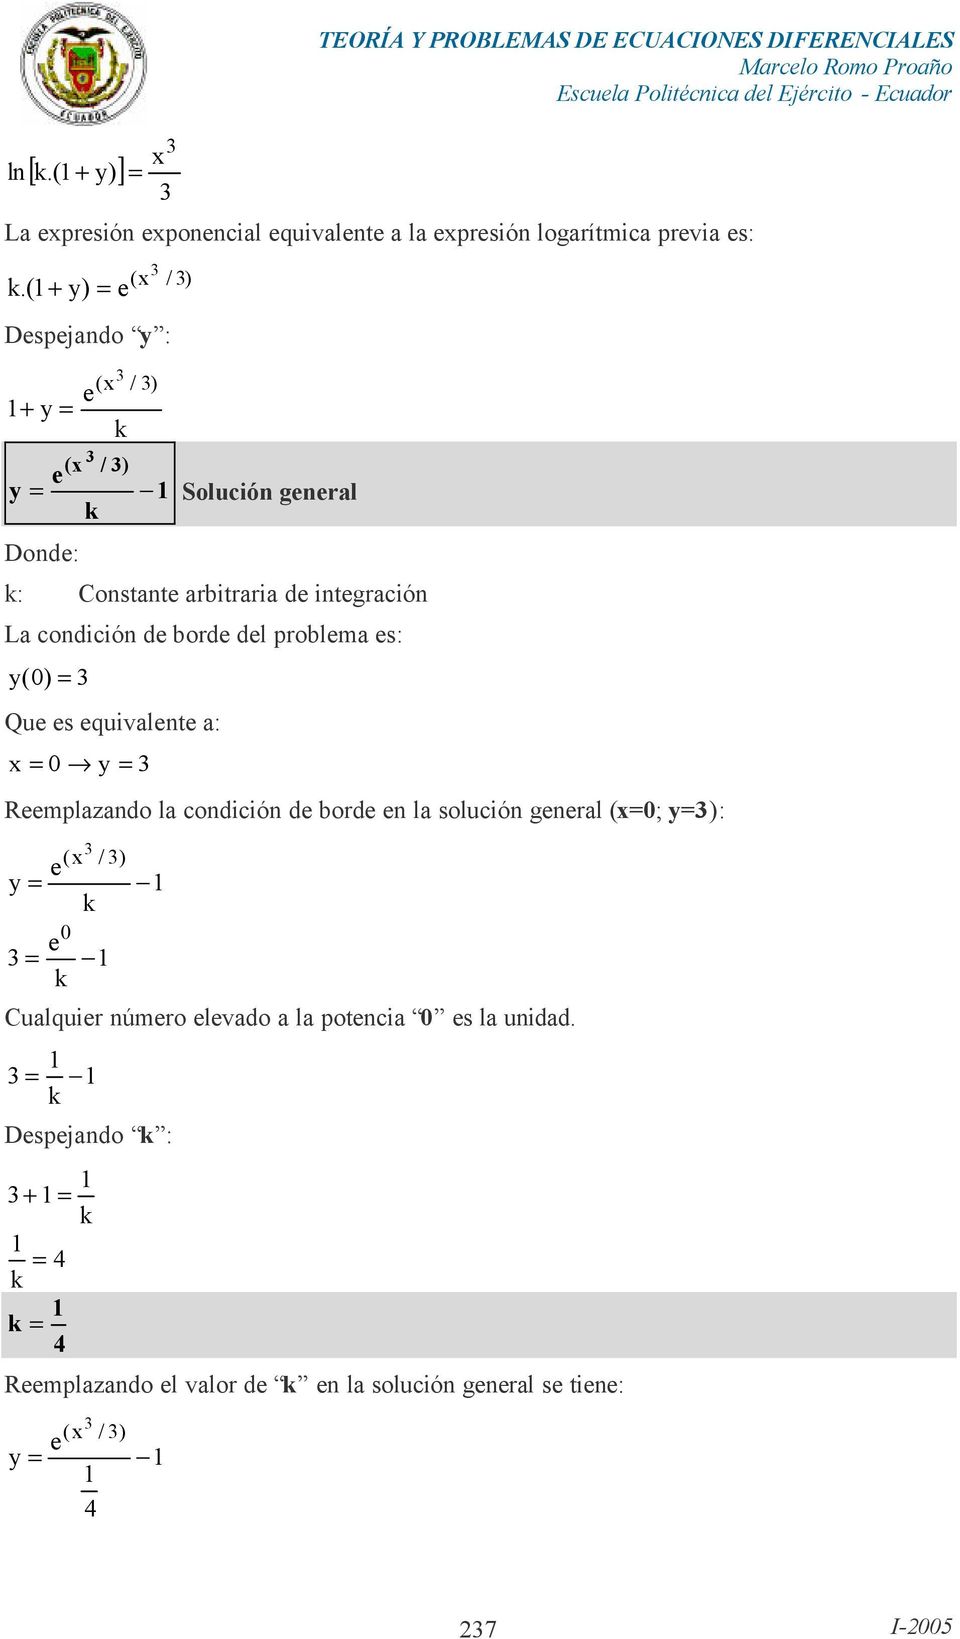 ( + ) = ( x / ) Dspjando : + = (x ( x / ) / ) = - Solución gnral Dond: : Constant arbitraria d intgración La condición d bord dl problma s: